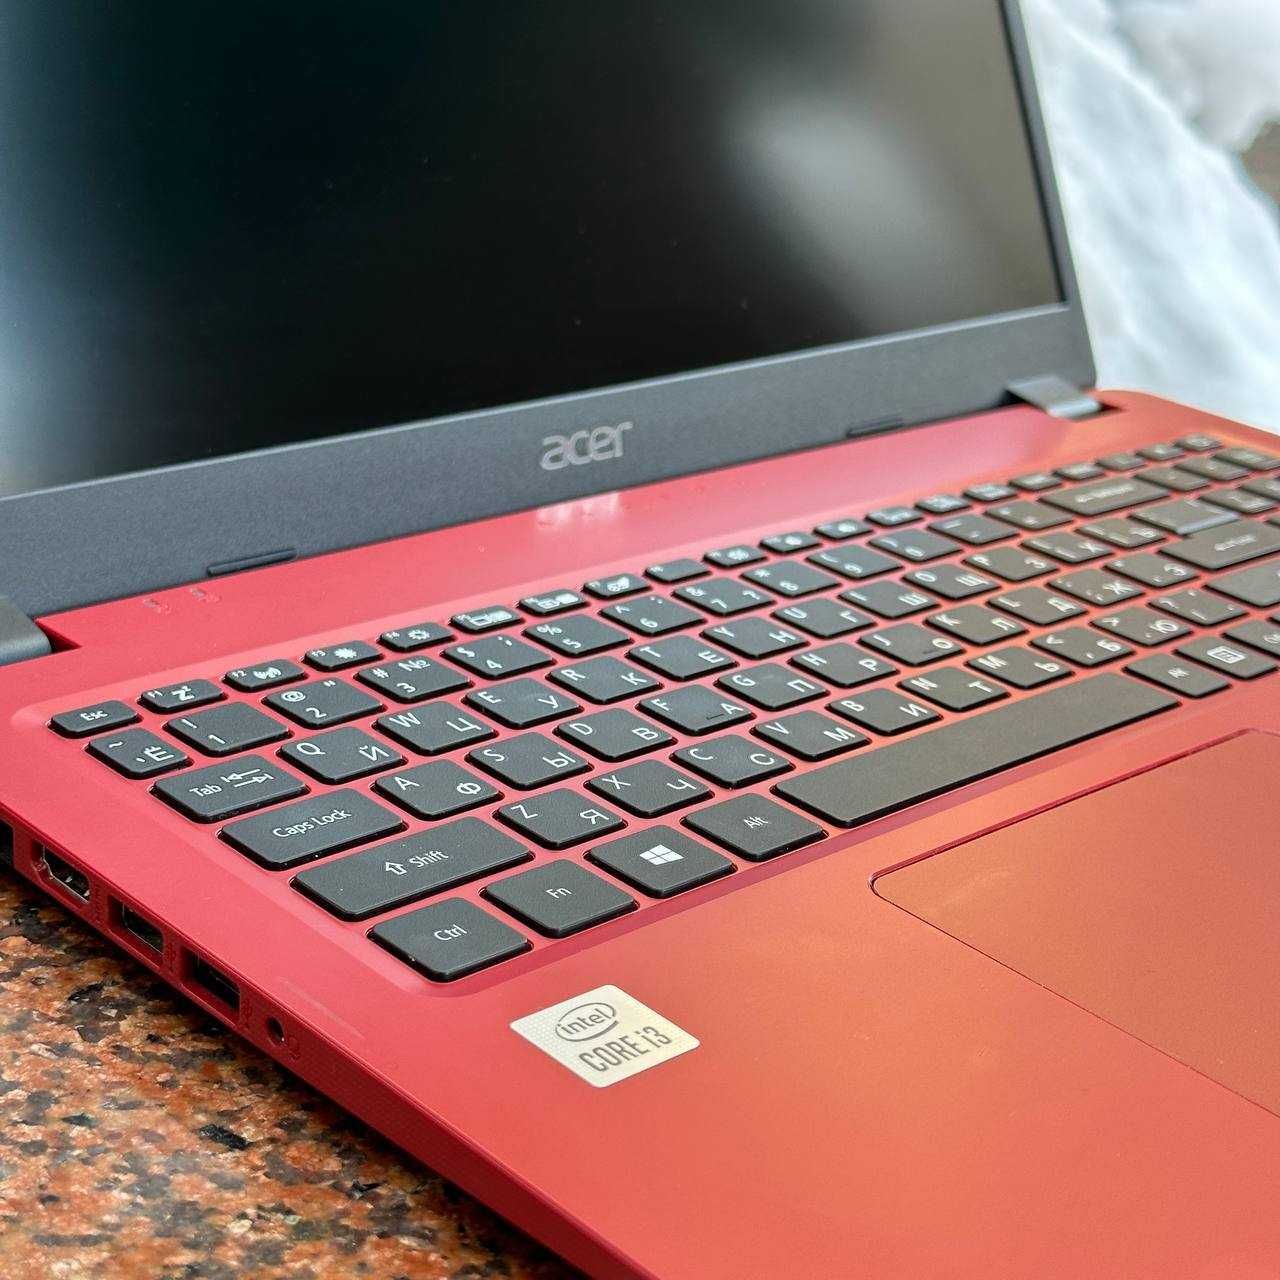 Ноутбук Acer Aspire для работы и учебы / LOMBARD